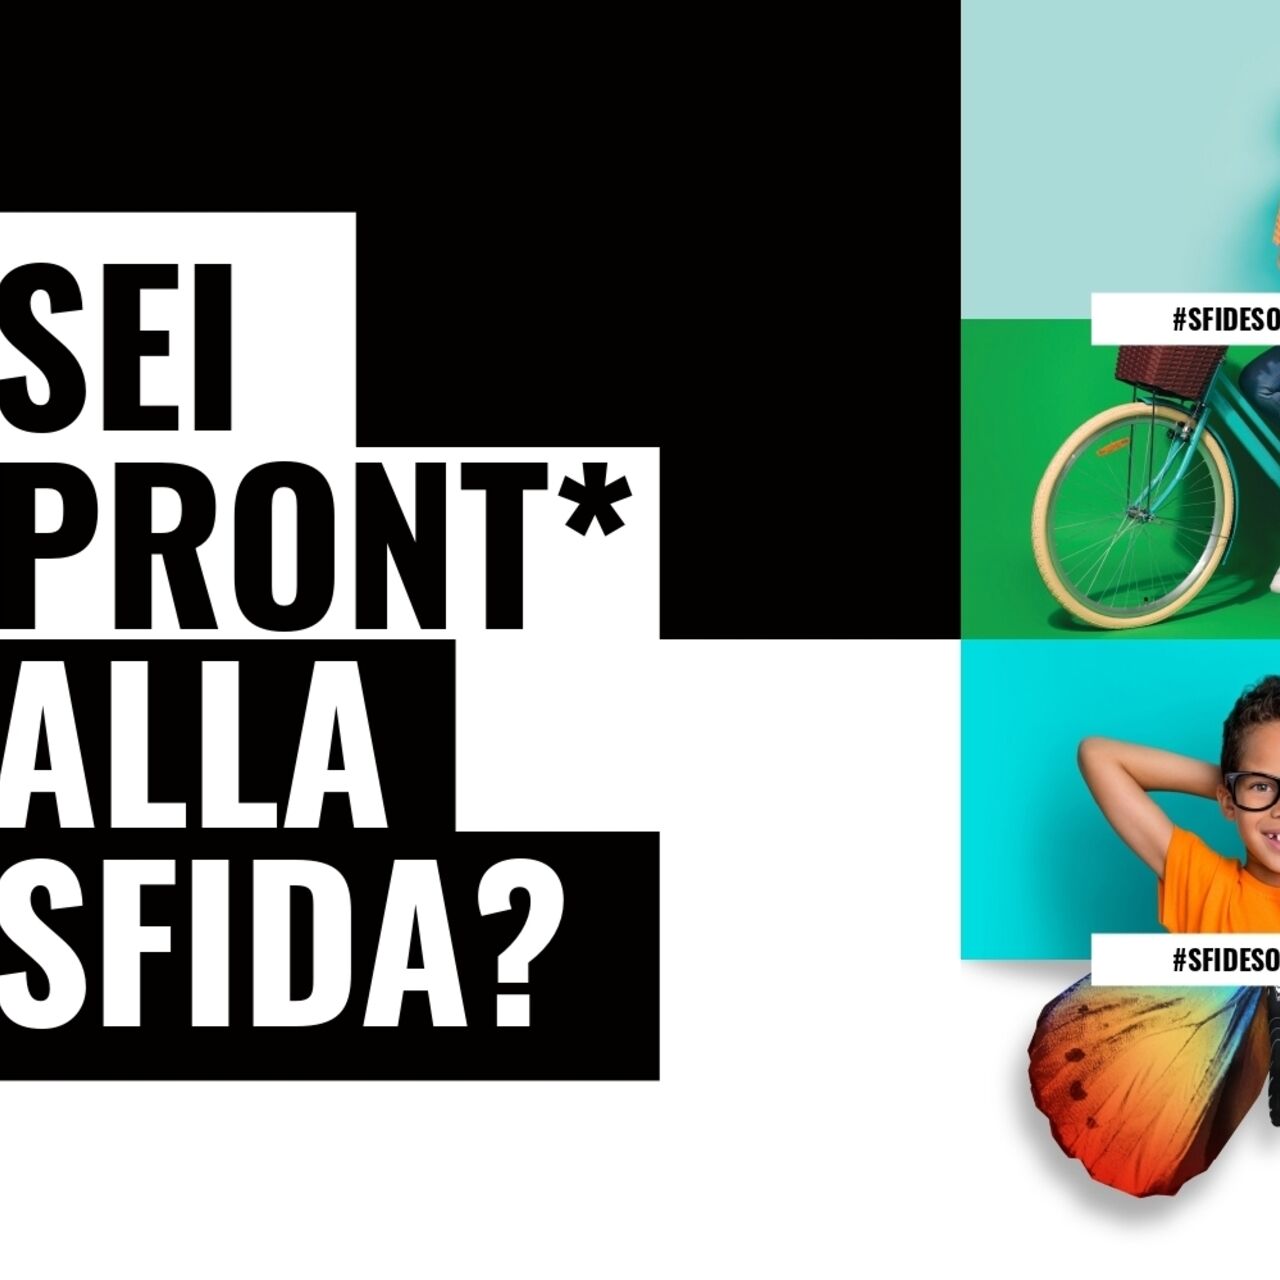 #SfideSostenibili: la key visual della campagna di comunicazione nata dal lavoro congiunto della Divisione Socialità e della Divisione Eventi e Congressi della Città di Lugano